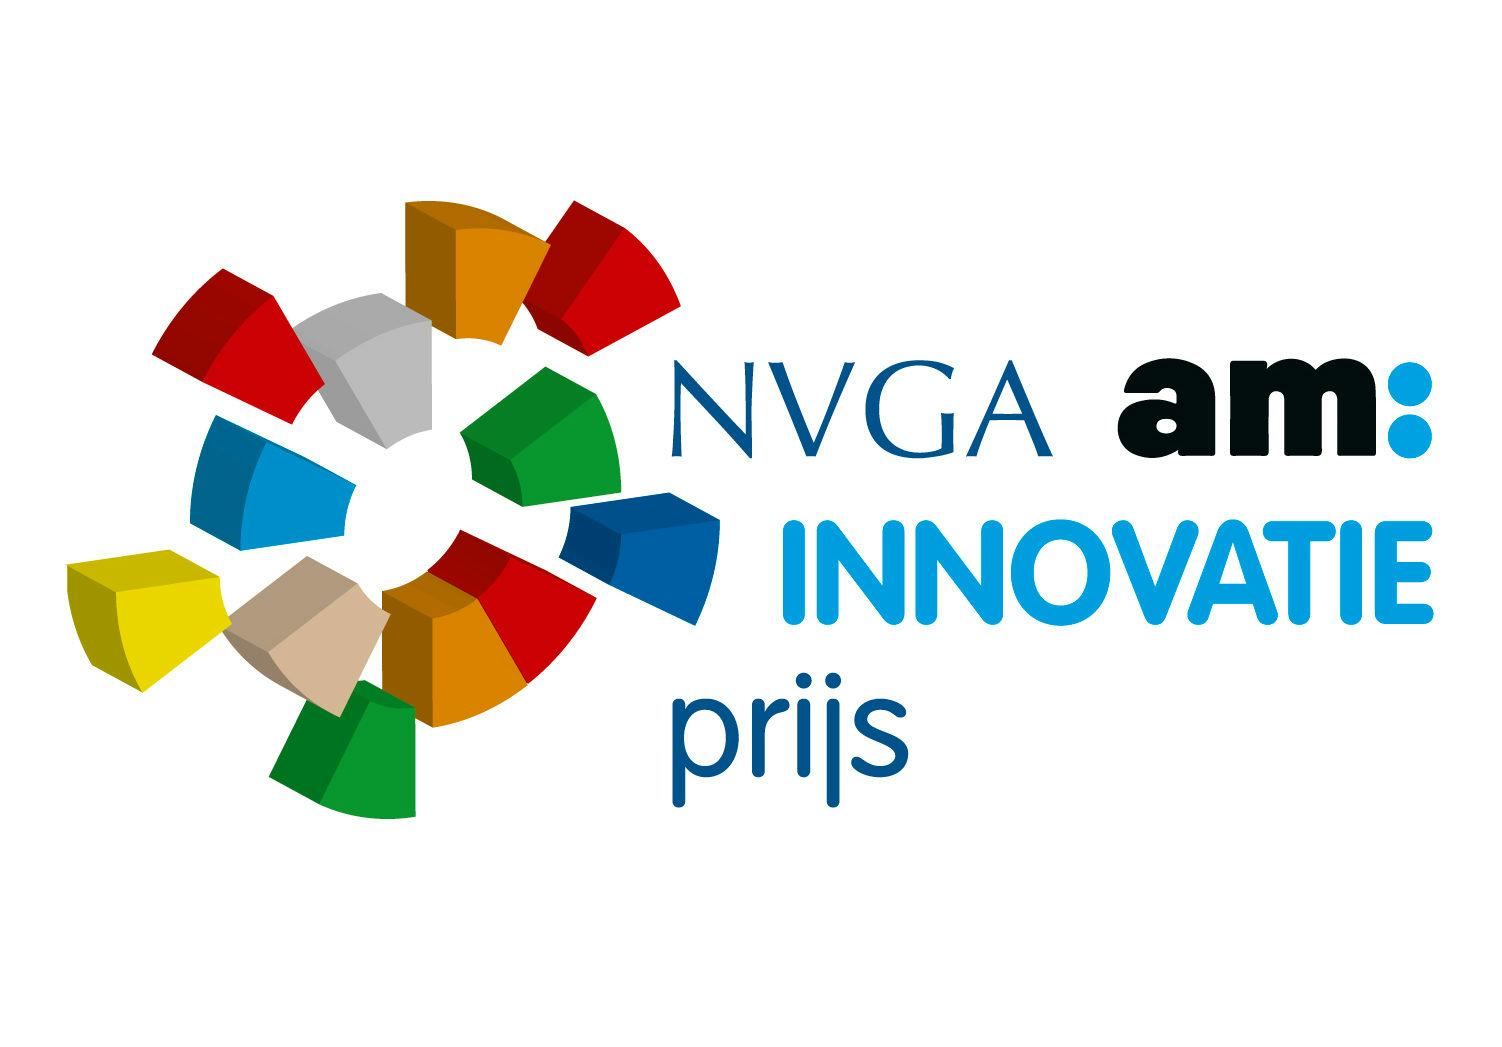 Vijf genomineerden voor NVGA am: Innovatieprijs bekendgemaakt